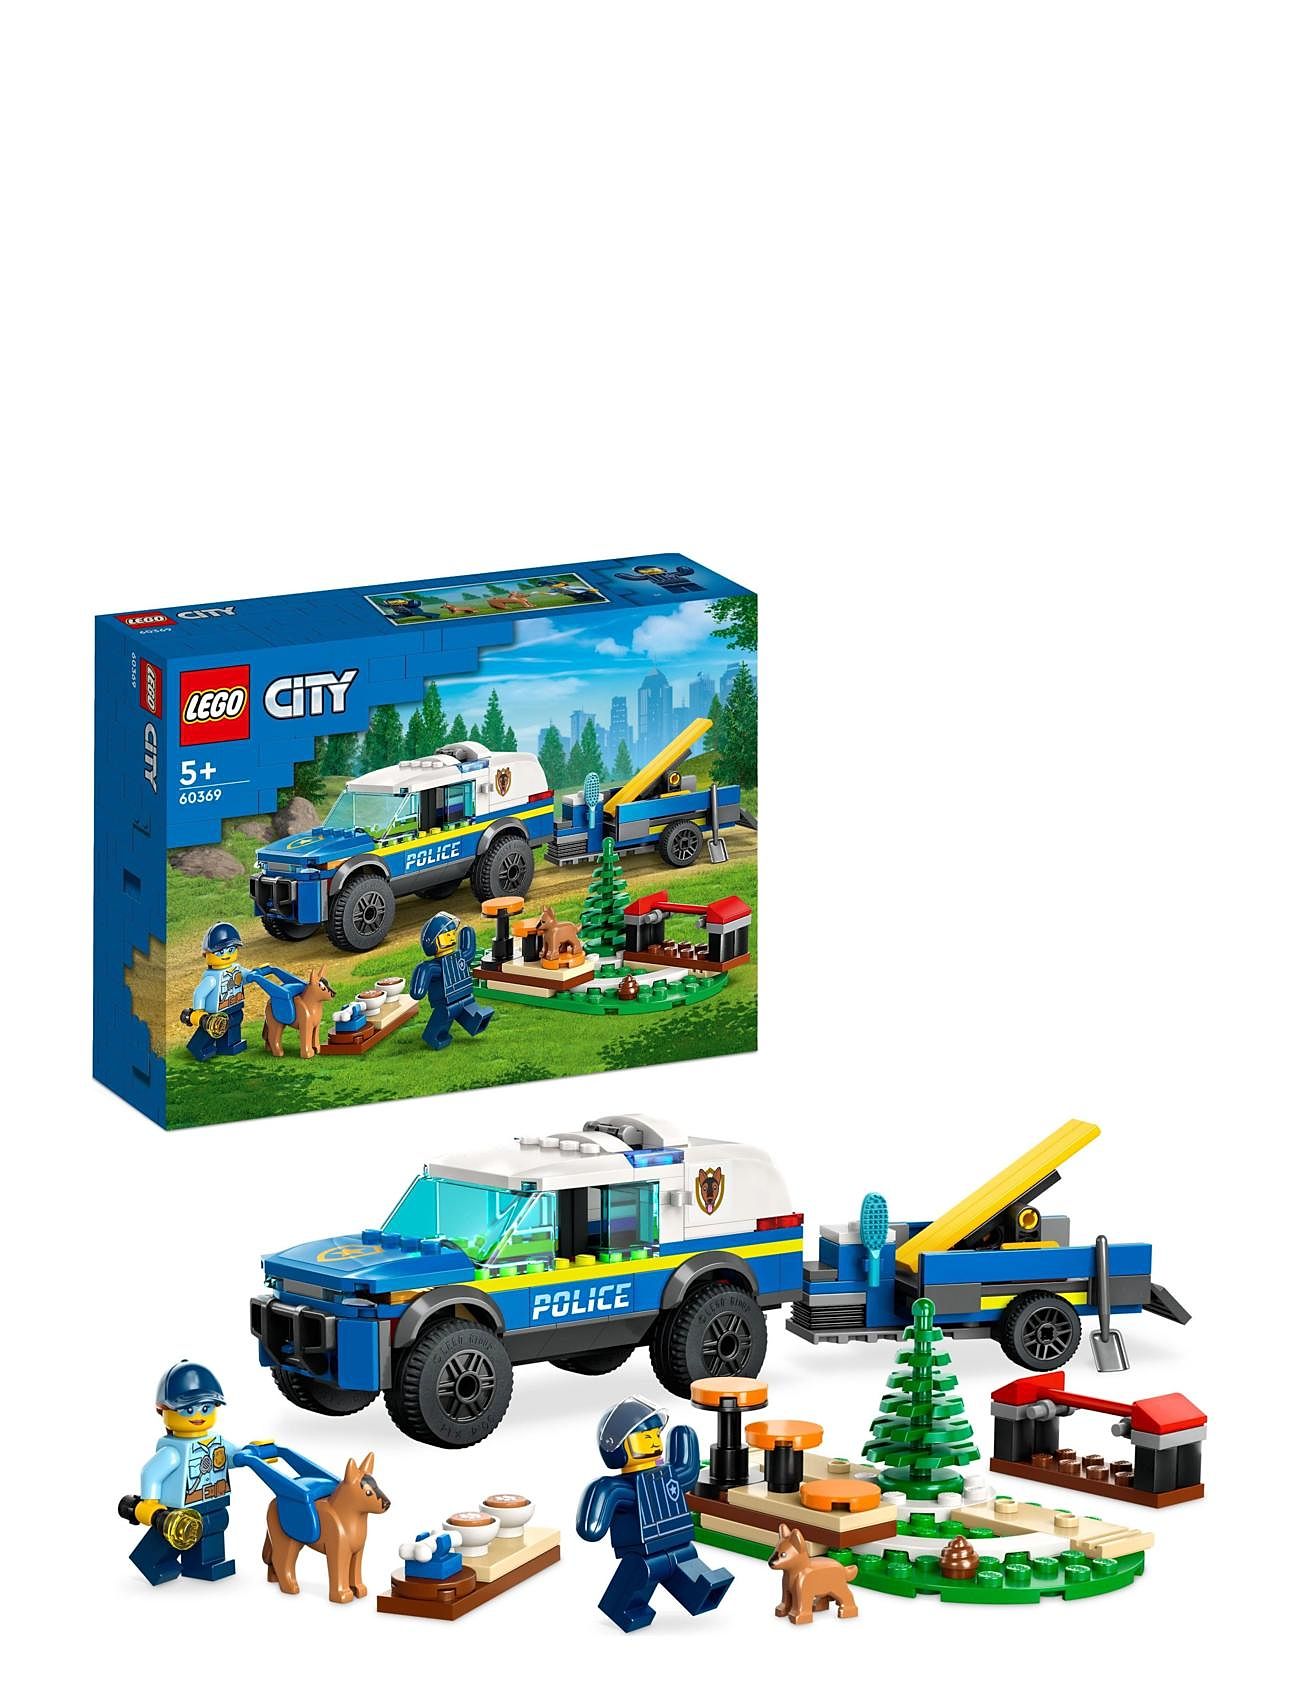 Mobile Police Dog Training Set With Toy Car Toys Lego Toys Lego city Multi/patterned LEGO